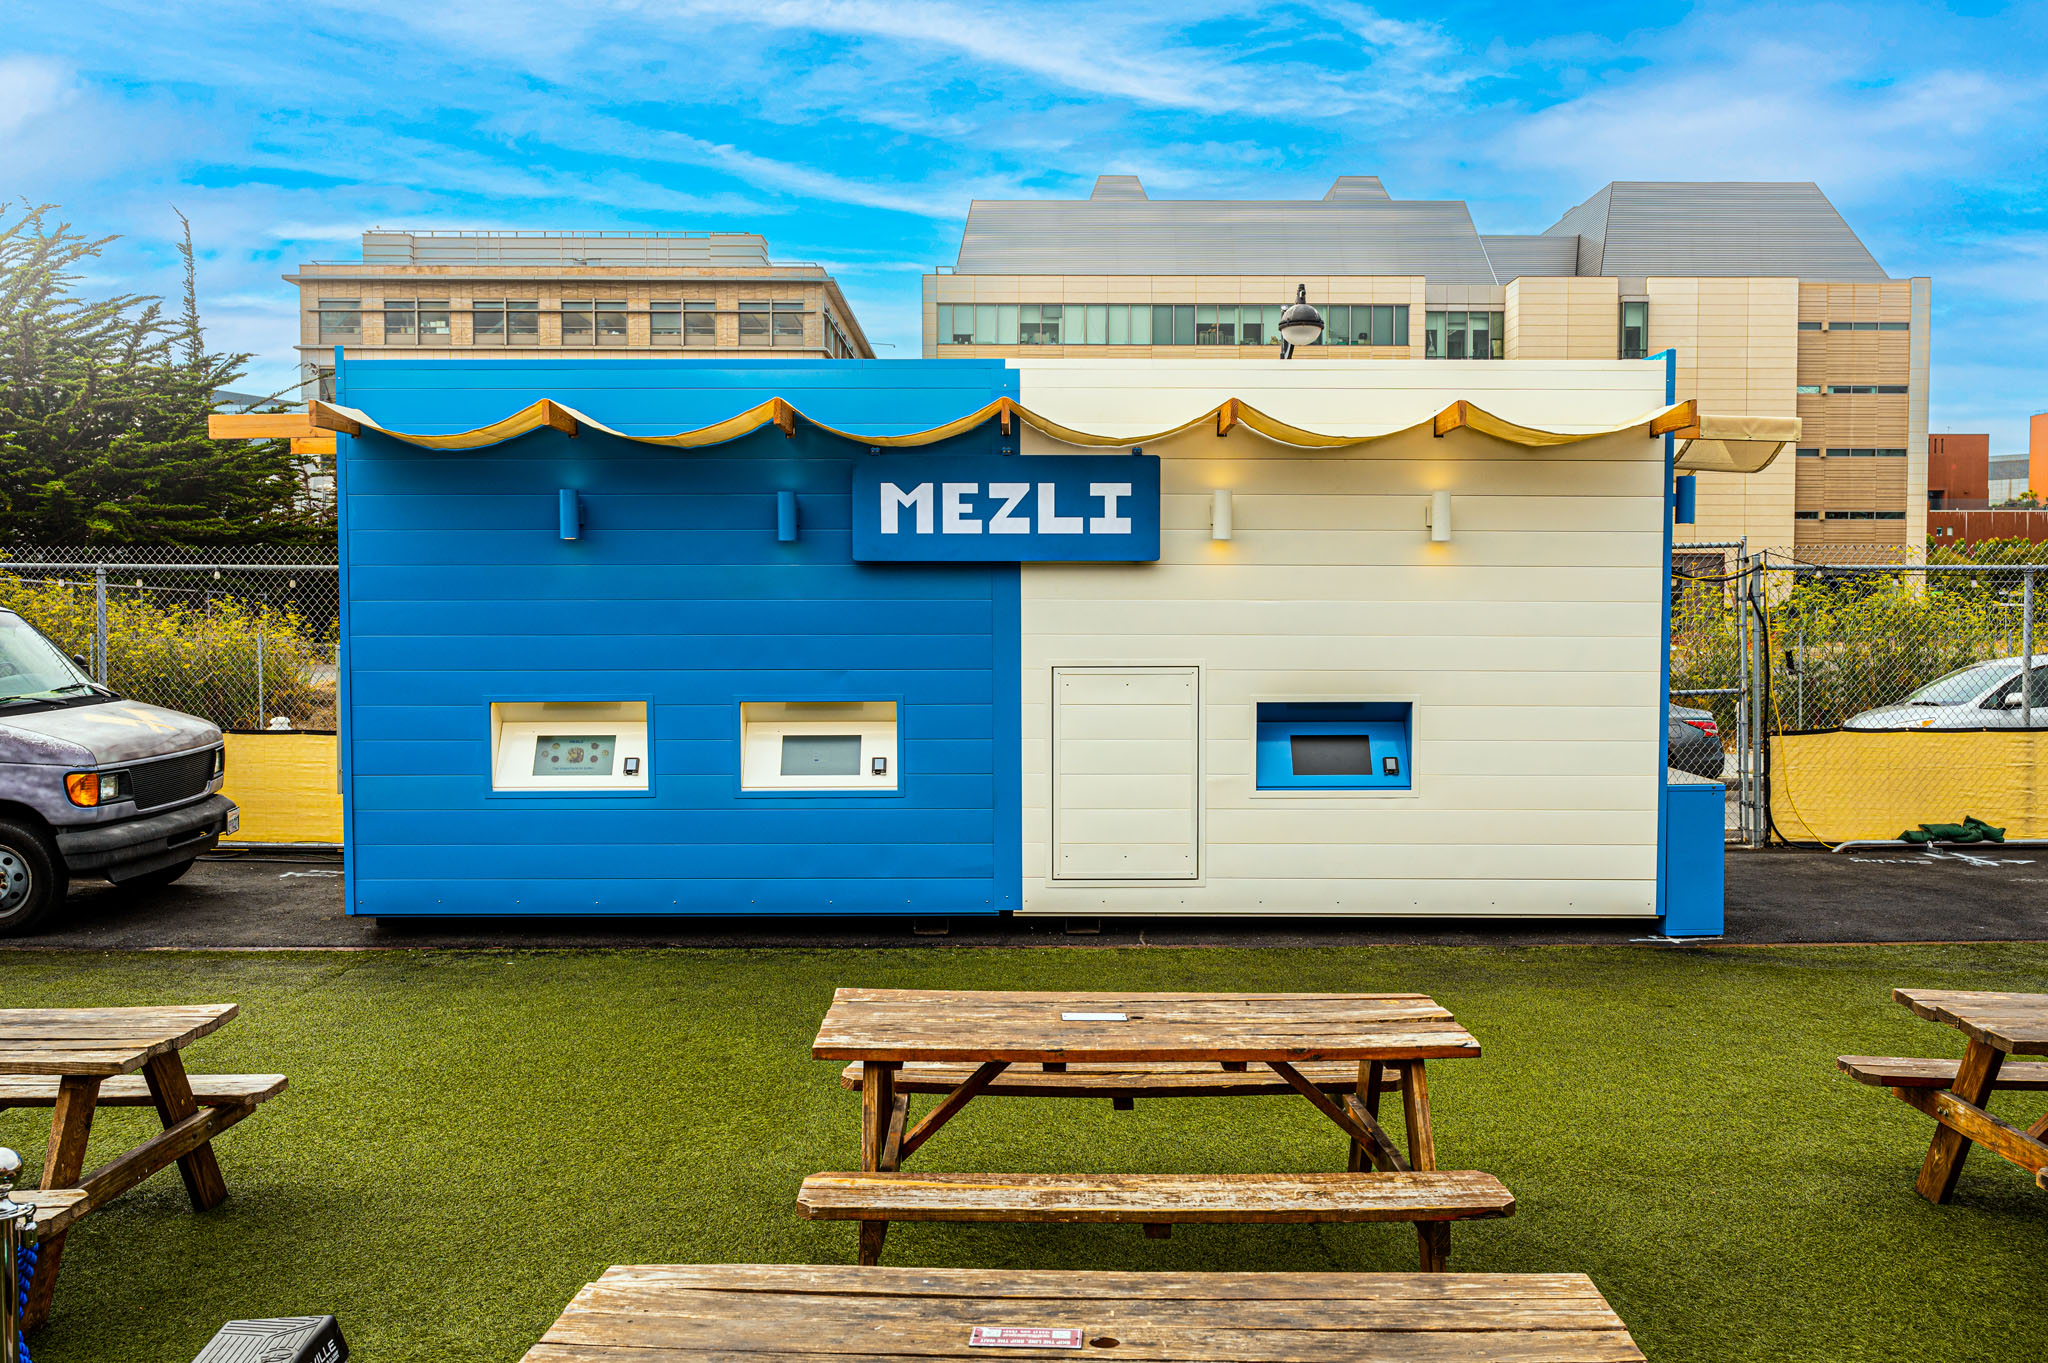 Chùm ảnh Mezli San Francisco: Nhà hàng đầu tiên vận hành 100% bằng robot, từ gọi món đến chế biến